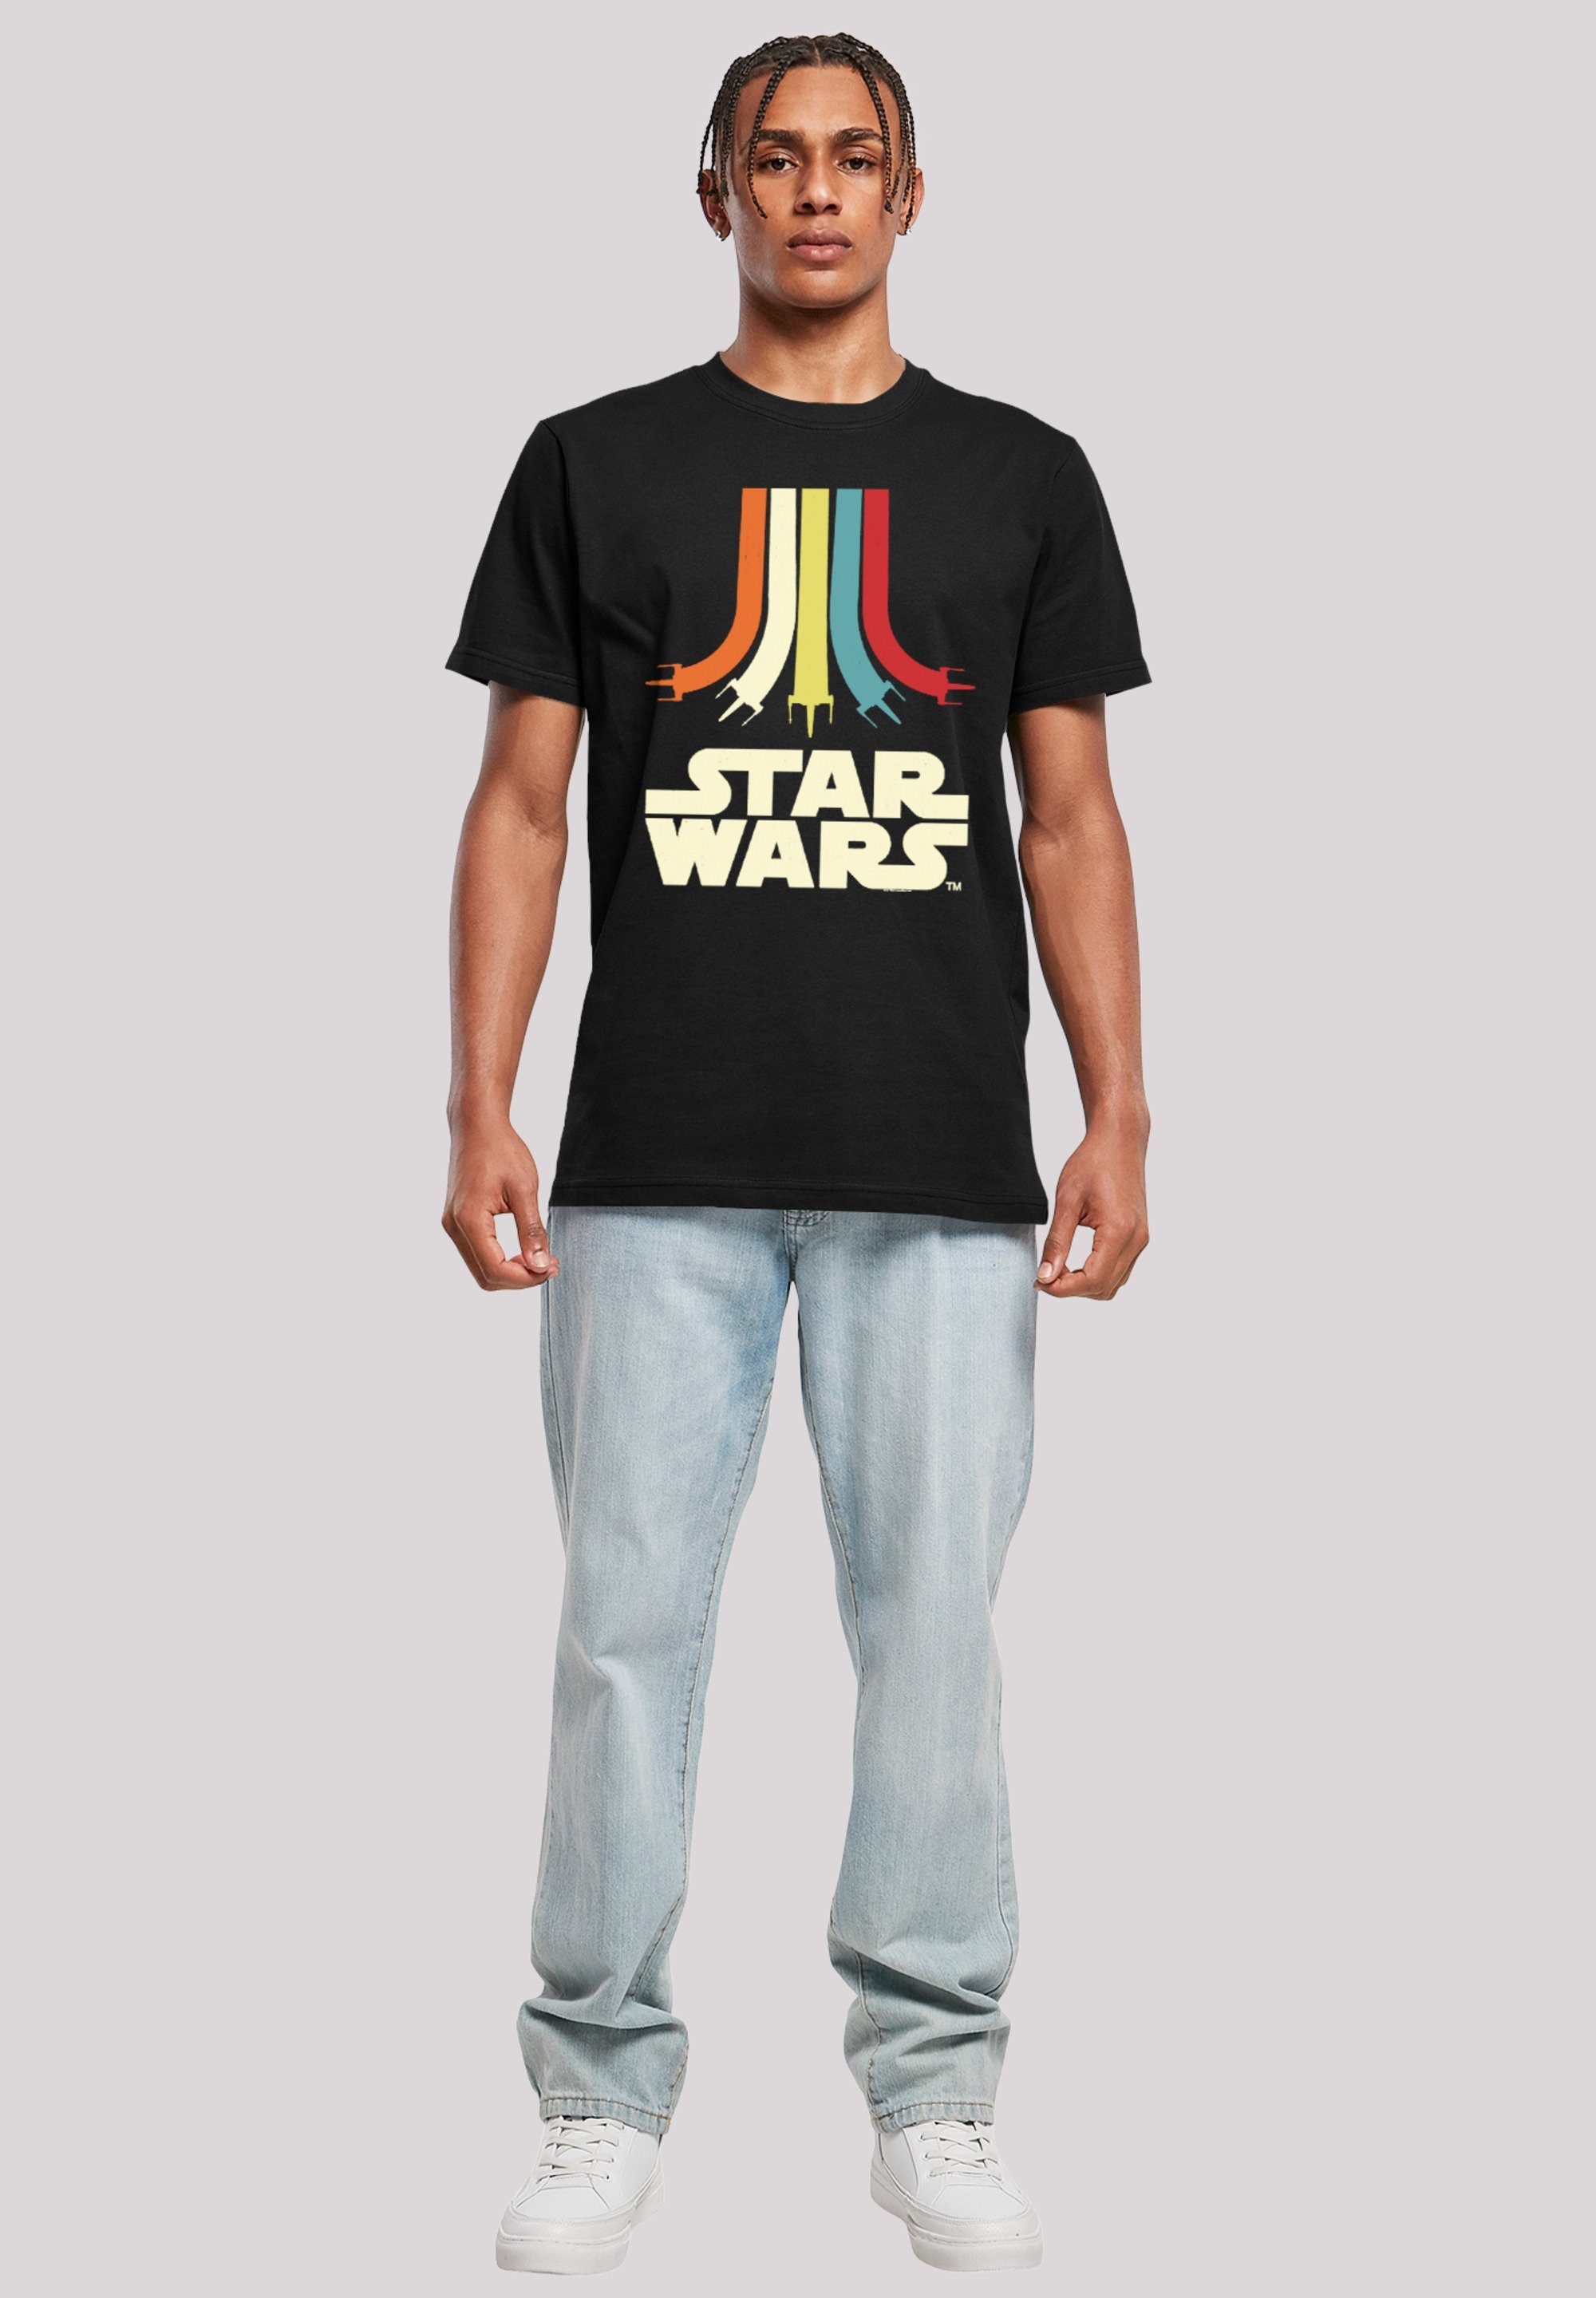 Regenbogen Retro Print Rainbow Wars Star T-Shirt F4NT4STIC